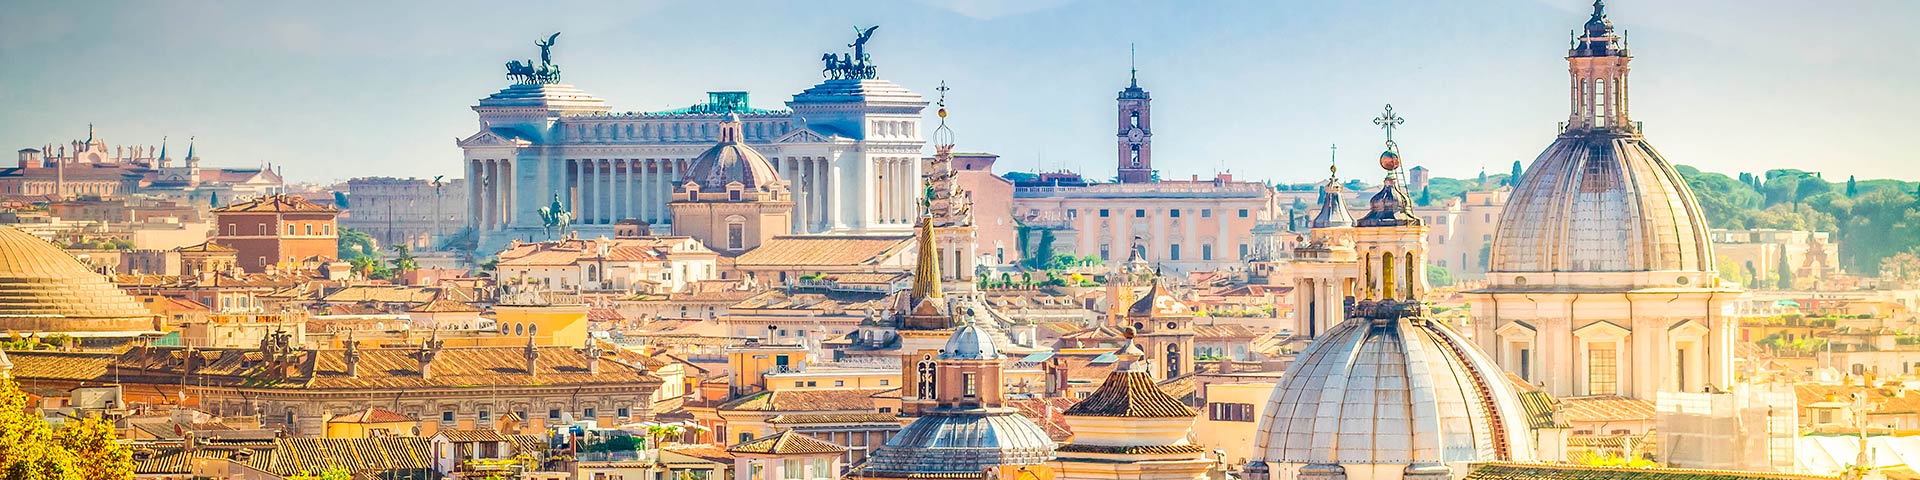 Italienisch Übersetzung: Skyline von Rom bei Tageslicht